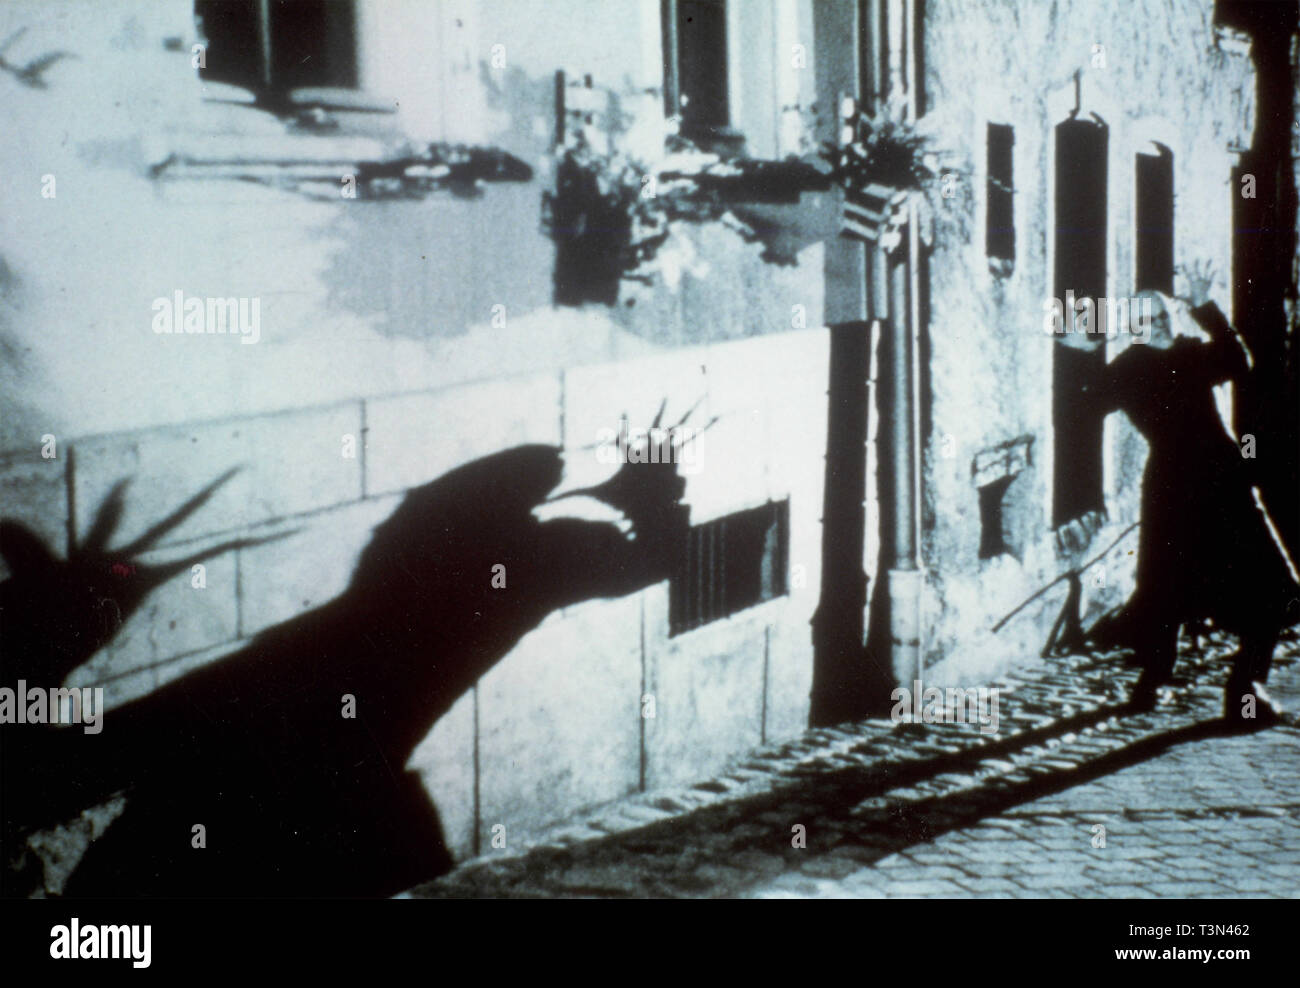 El actor Willem Dafoe en la película la sombra del vampiro, 2000 Foto de stock